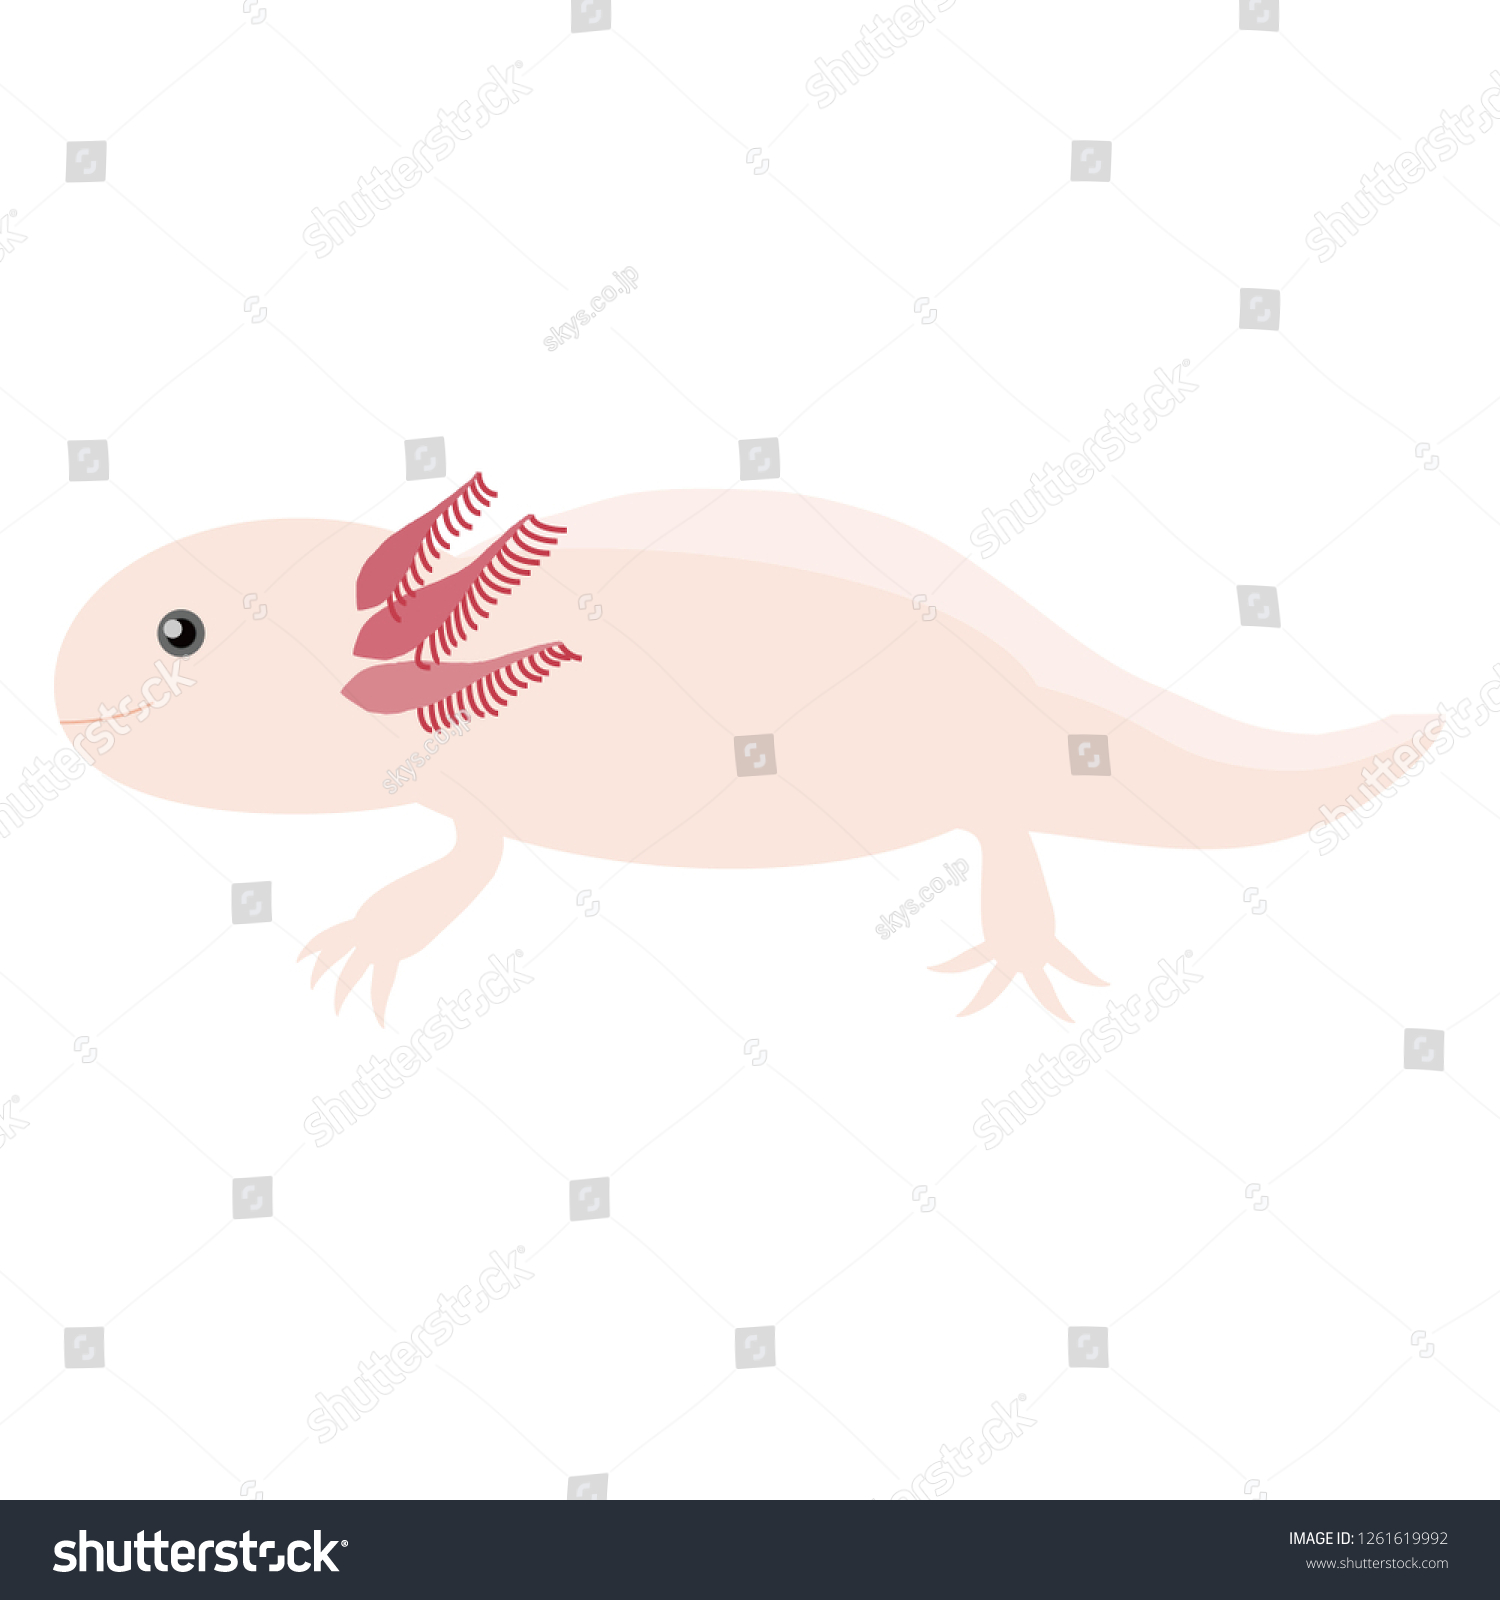 SVG of Illustration of the axolotl svg